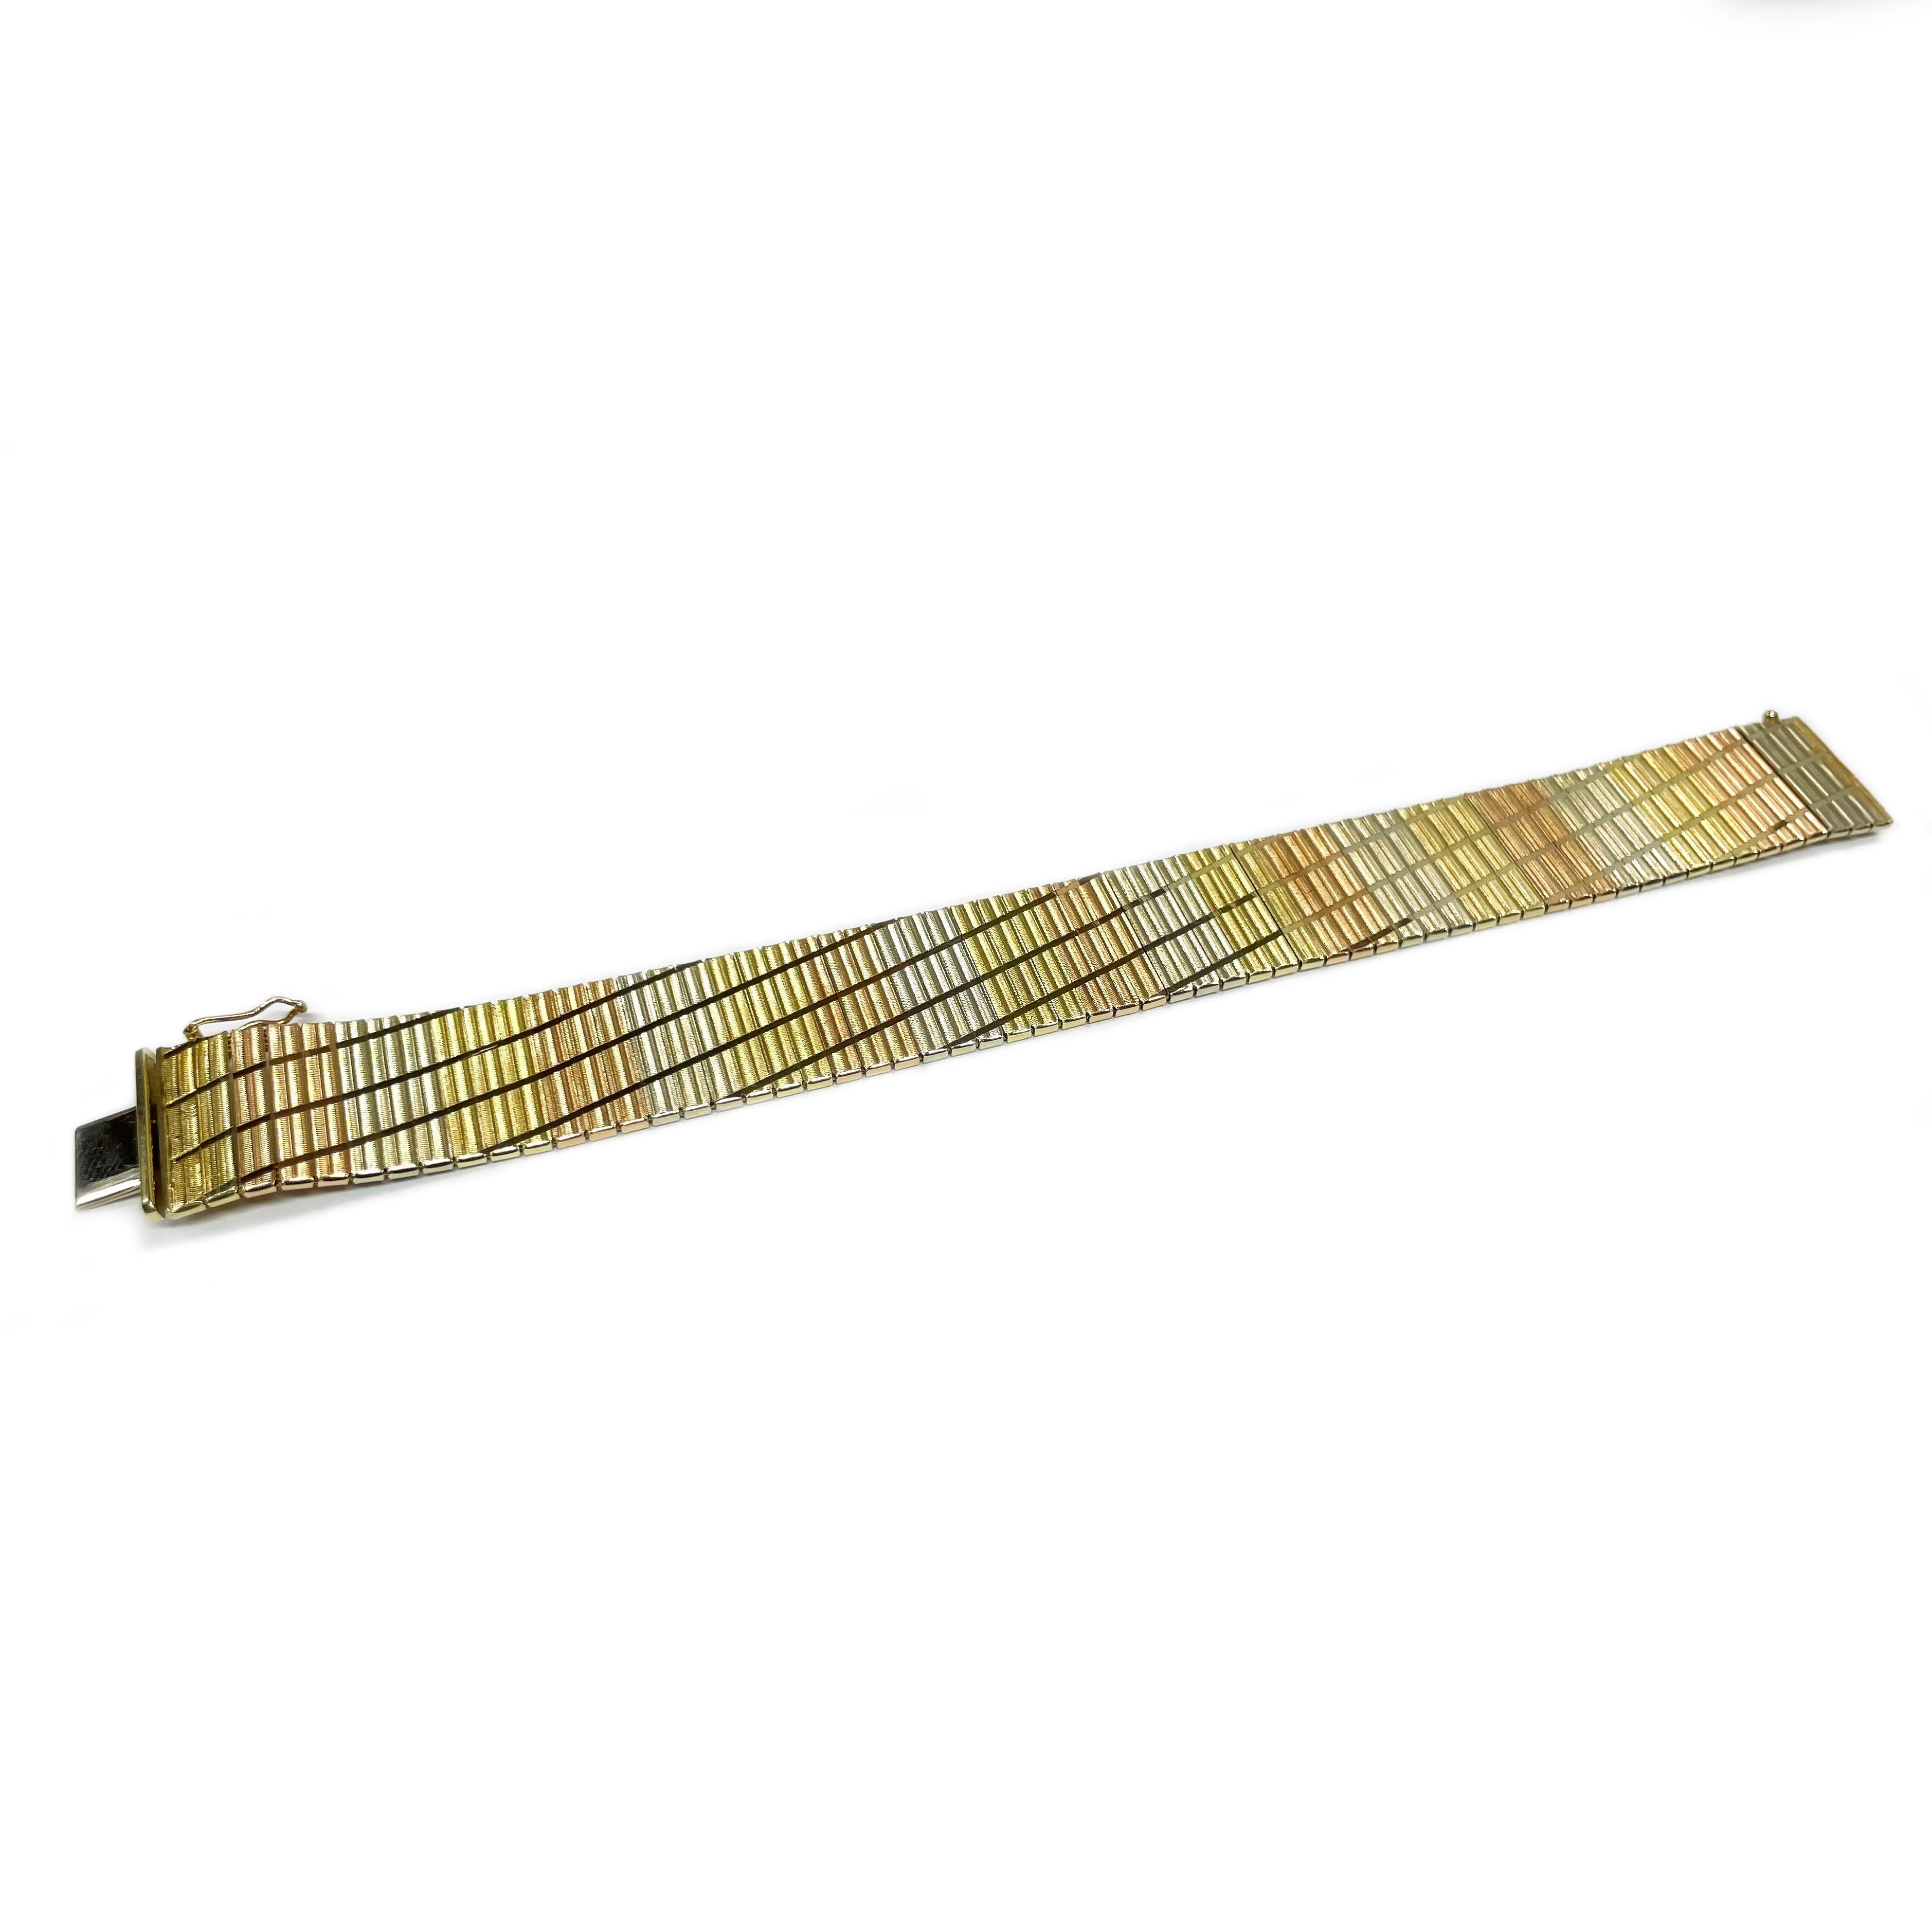 14 Karat Tri-Tone Diamond Cut Bracelet. Le bracelet comporte trois maillons alternés en or jaune, or rose et or blanc, avec un motif diagonal taillé en diamant. Le recto du bracelet présente une finition texturée et le verso une finition lisse et